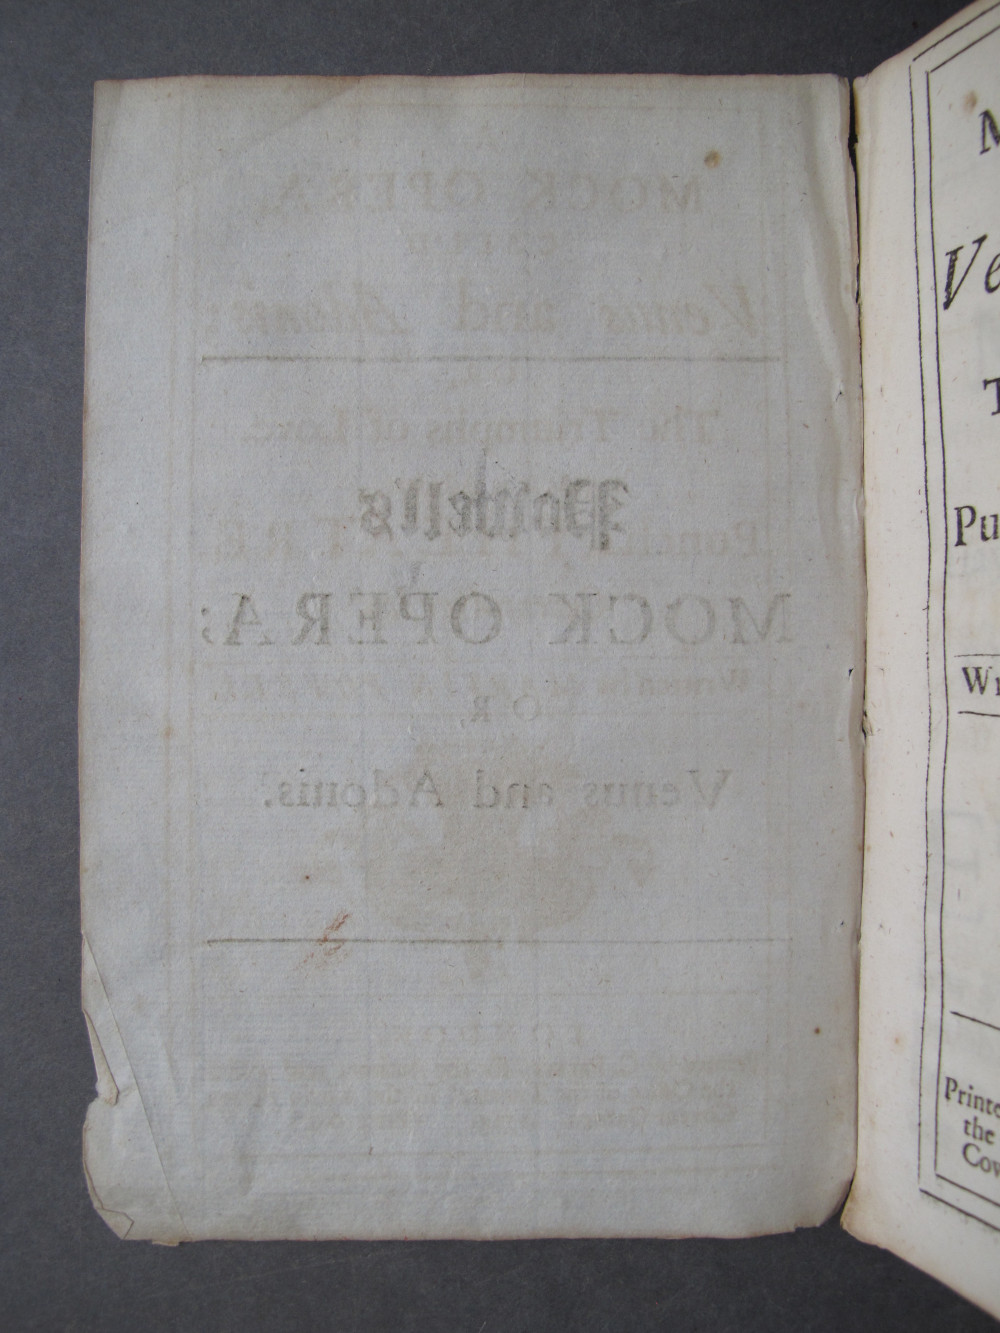 Folio A1 verso (no text)